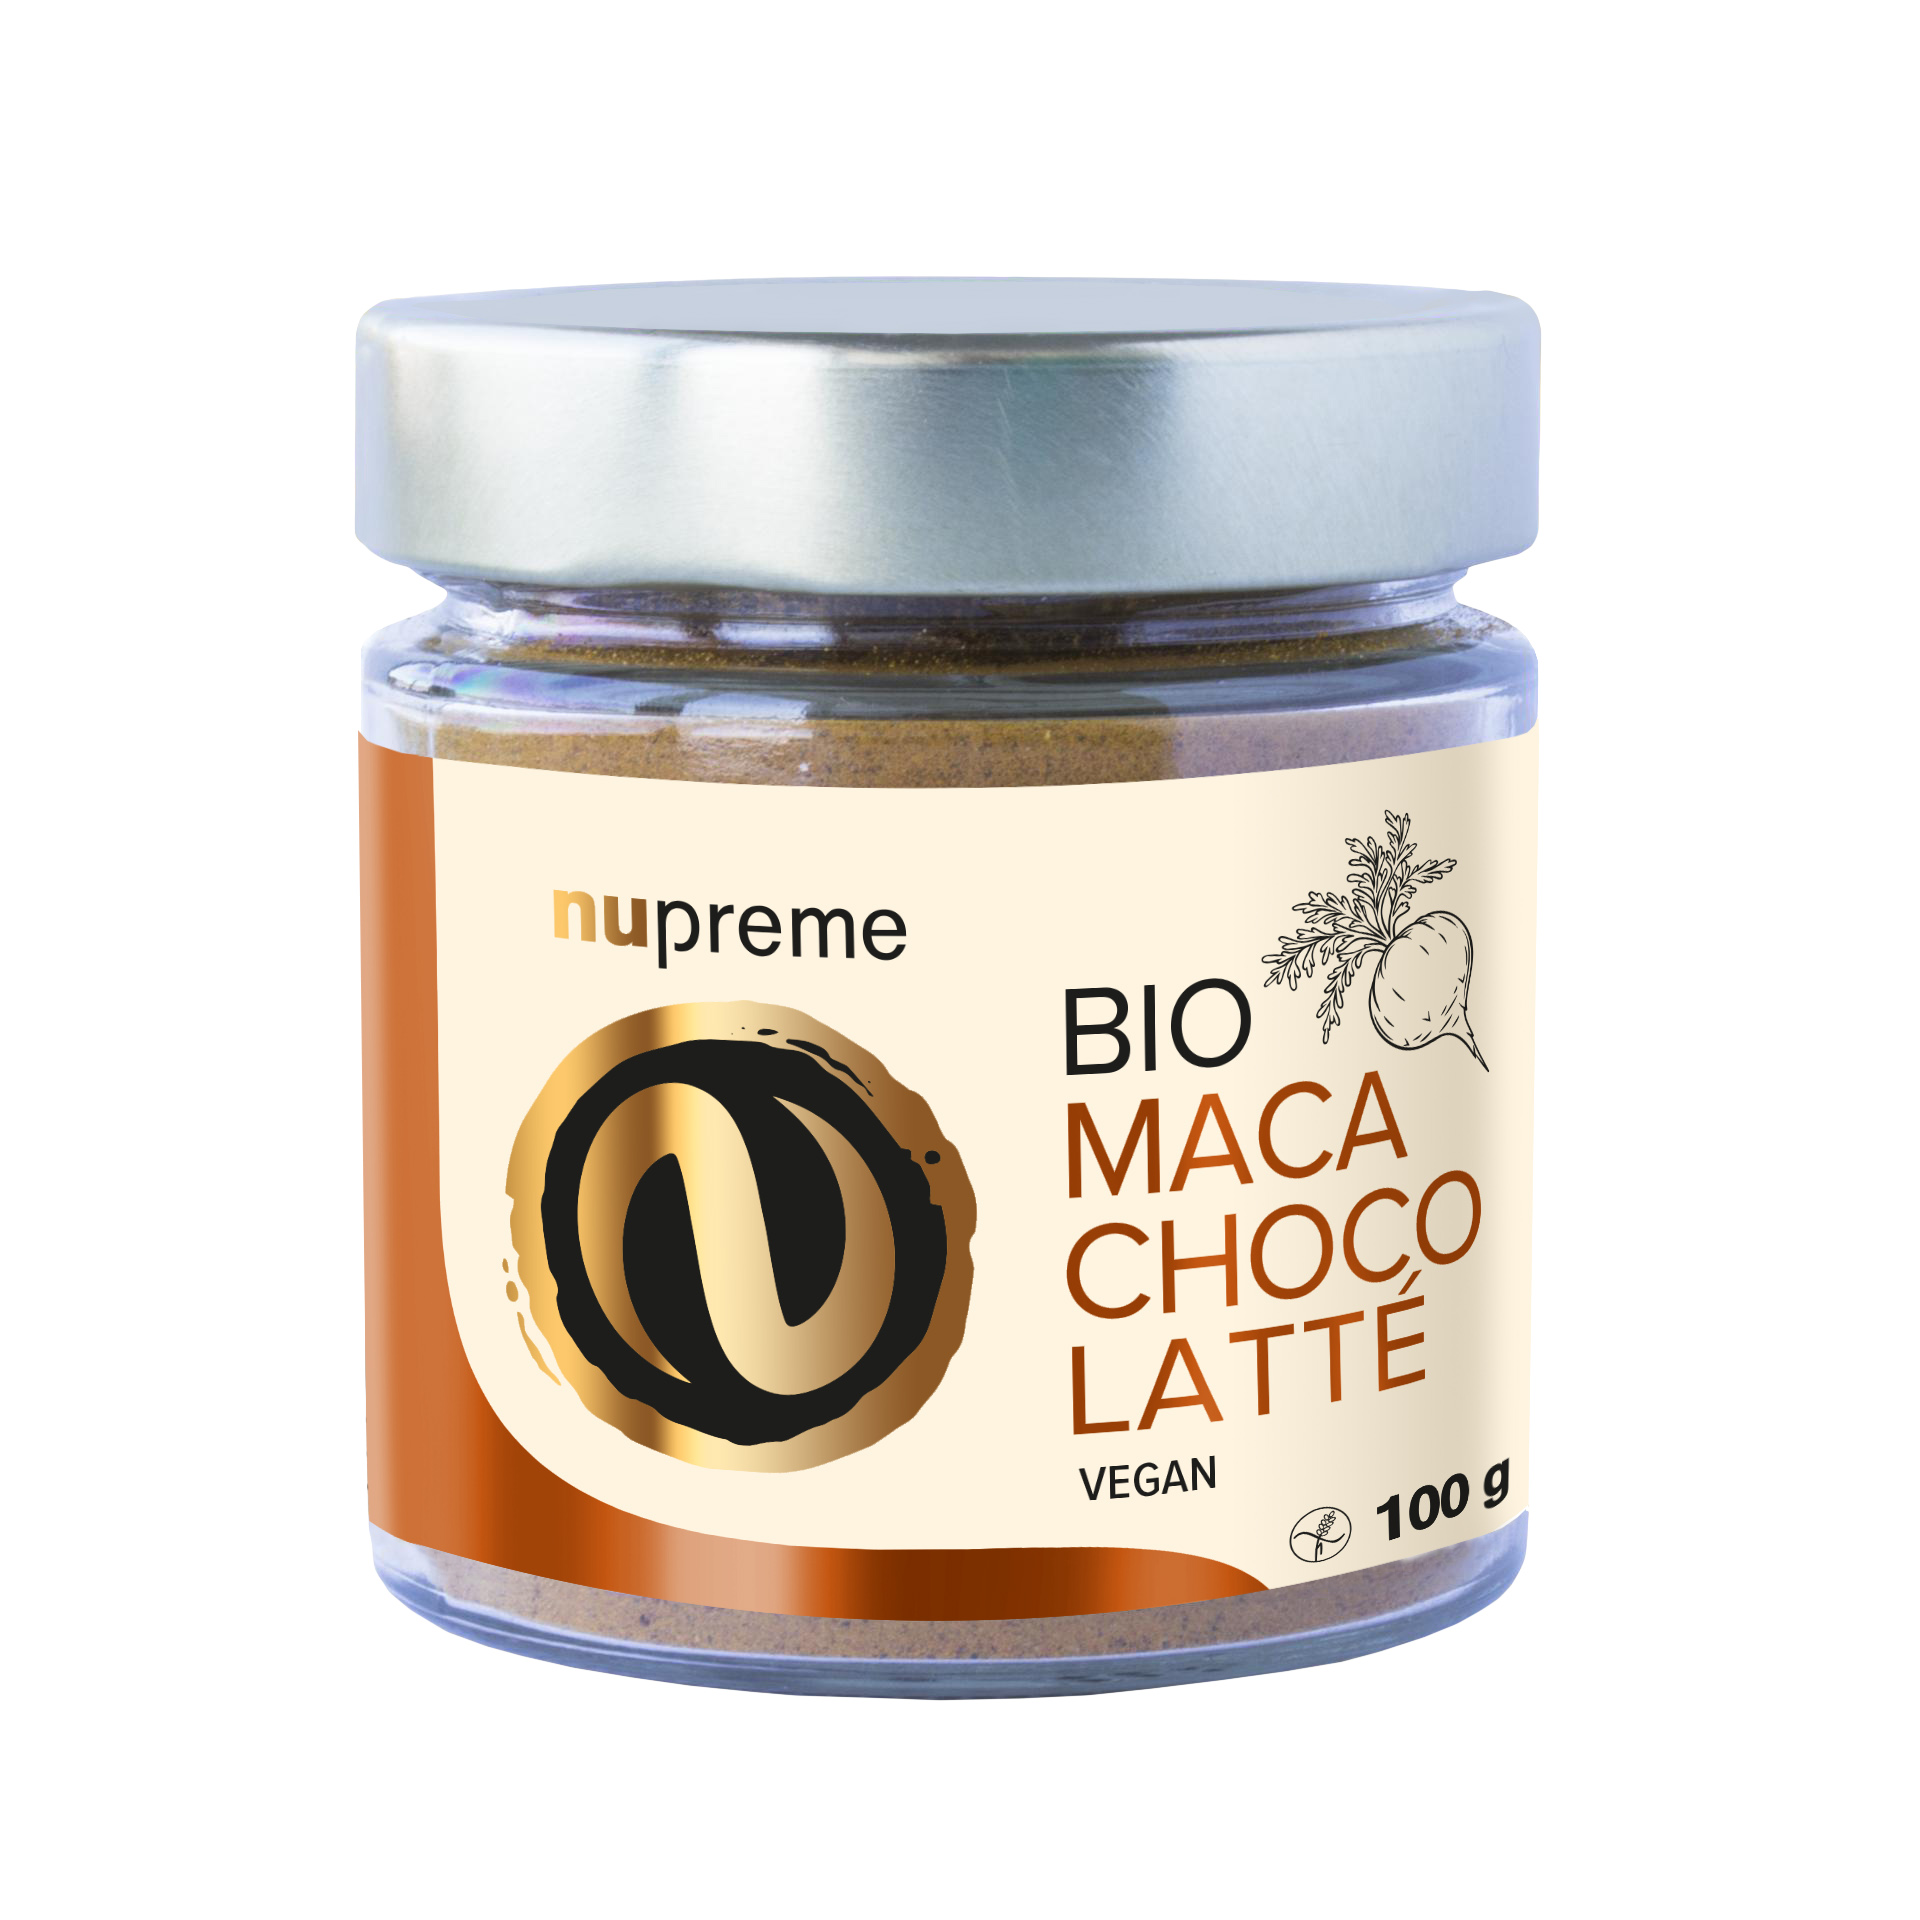 Nupreme Maca Choco Latté BIO 100g